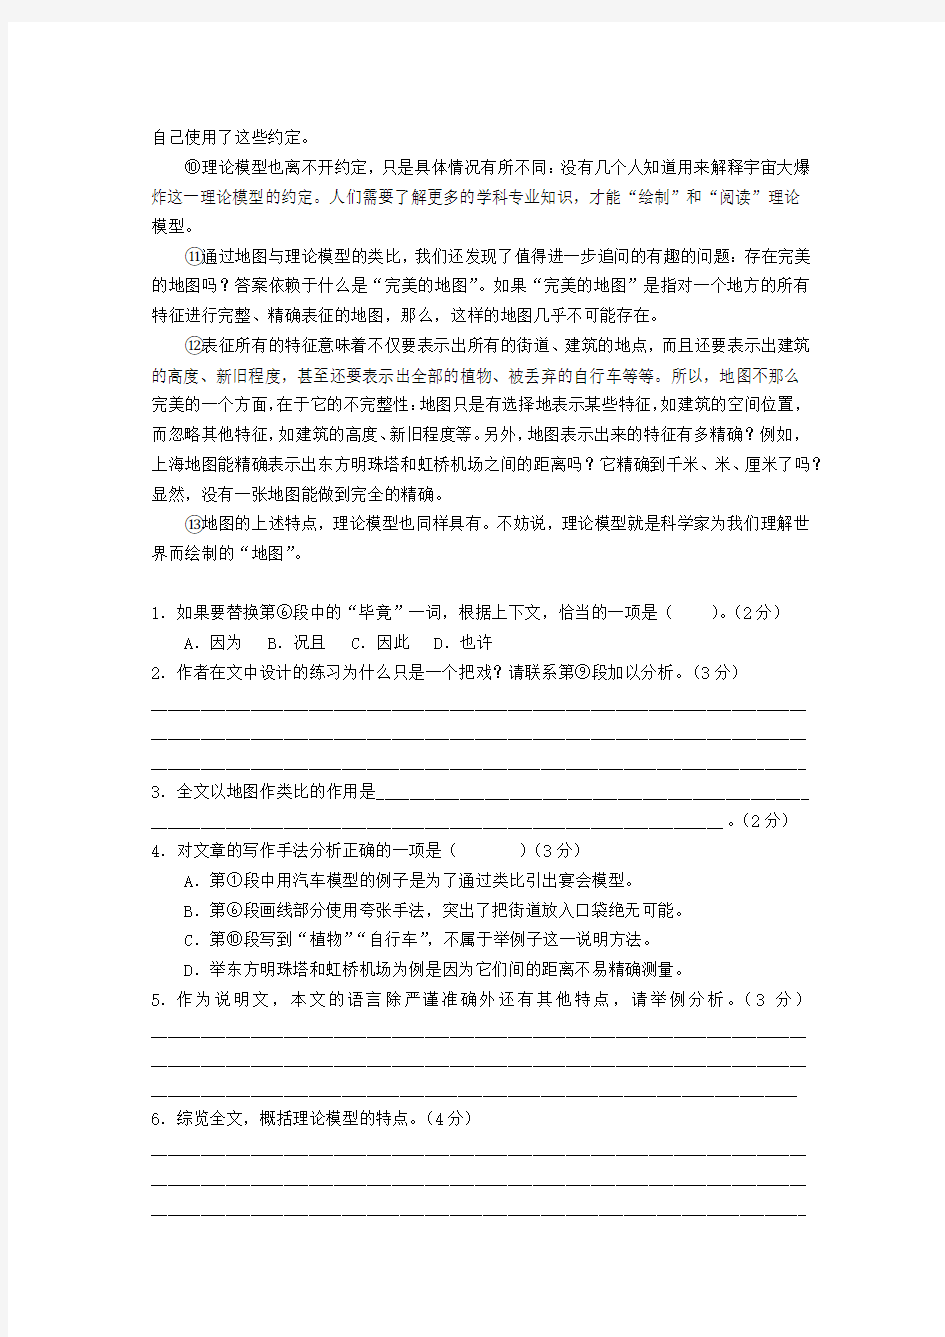 2015年上海高考语文试卷(含答案)